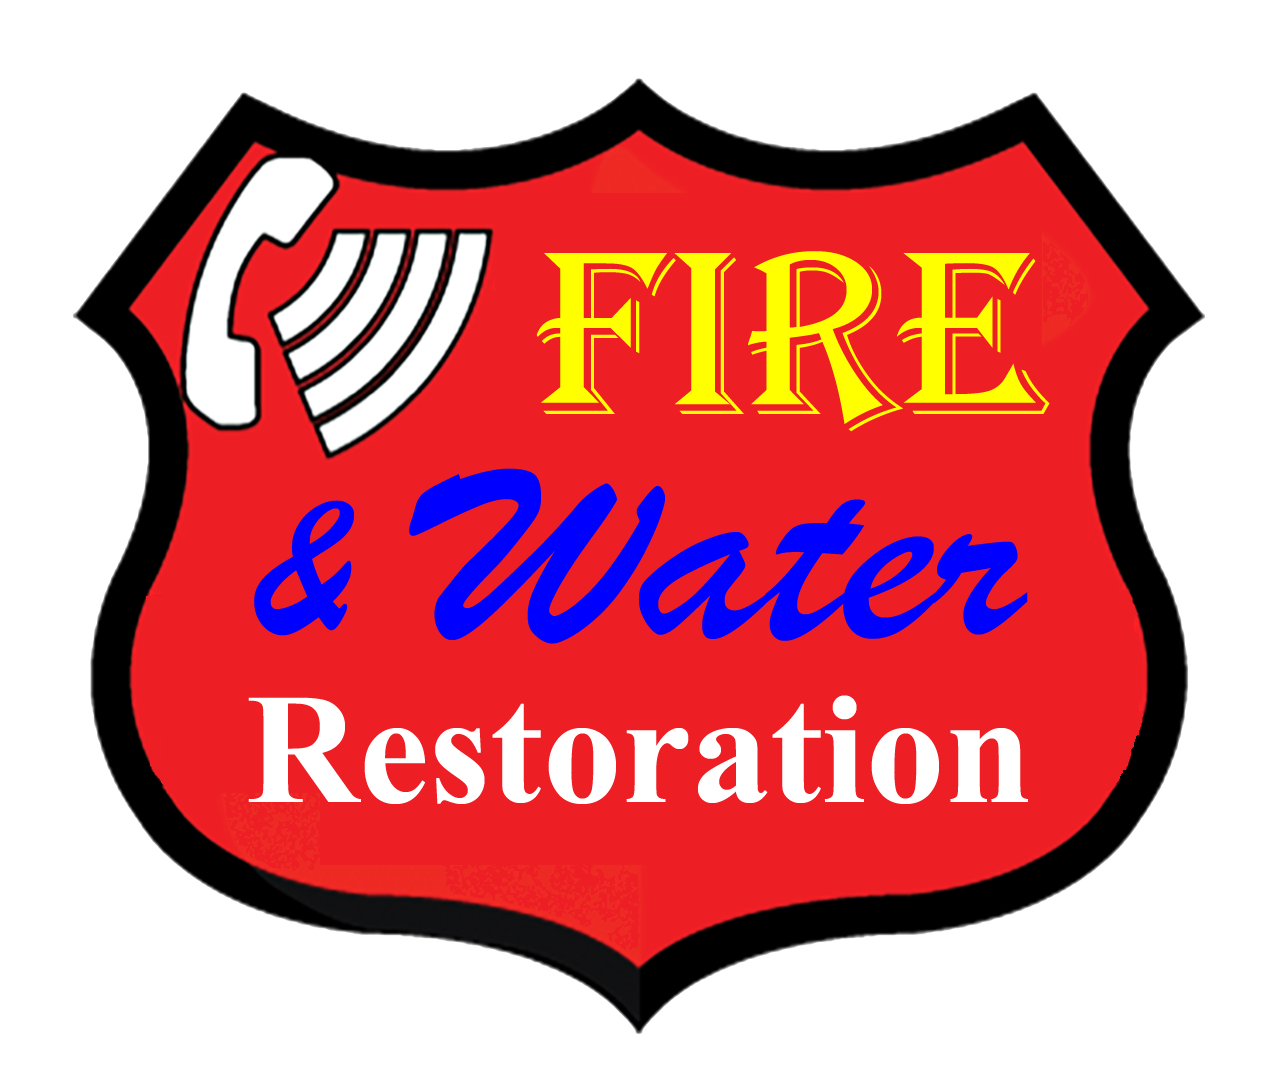 Firewaterrestoration